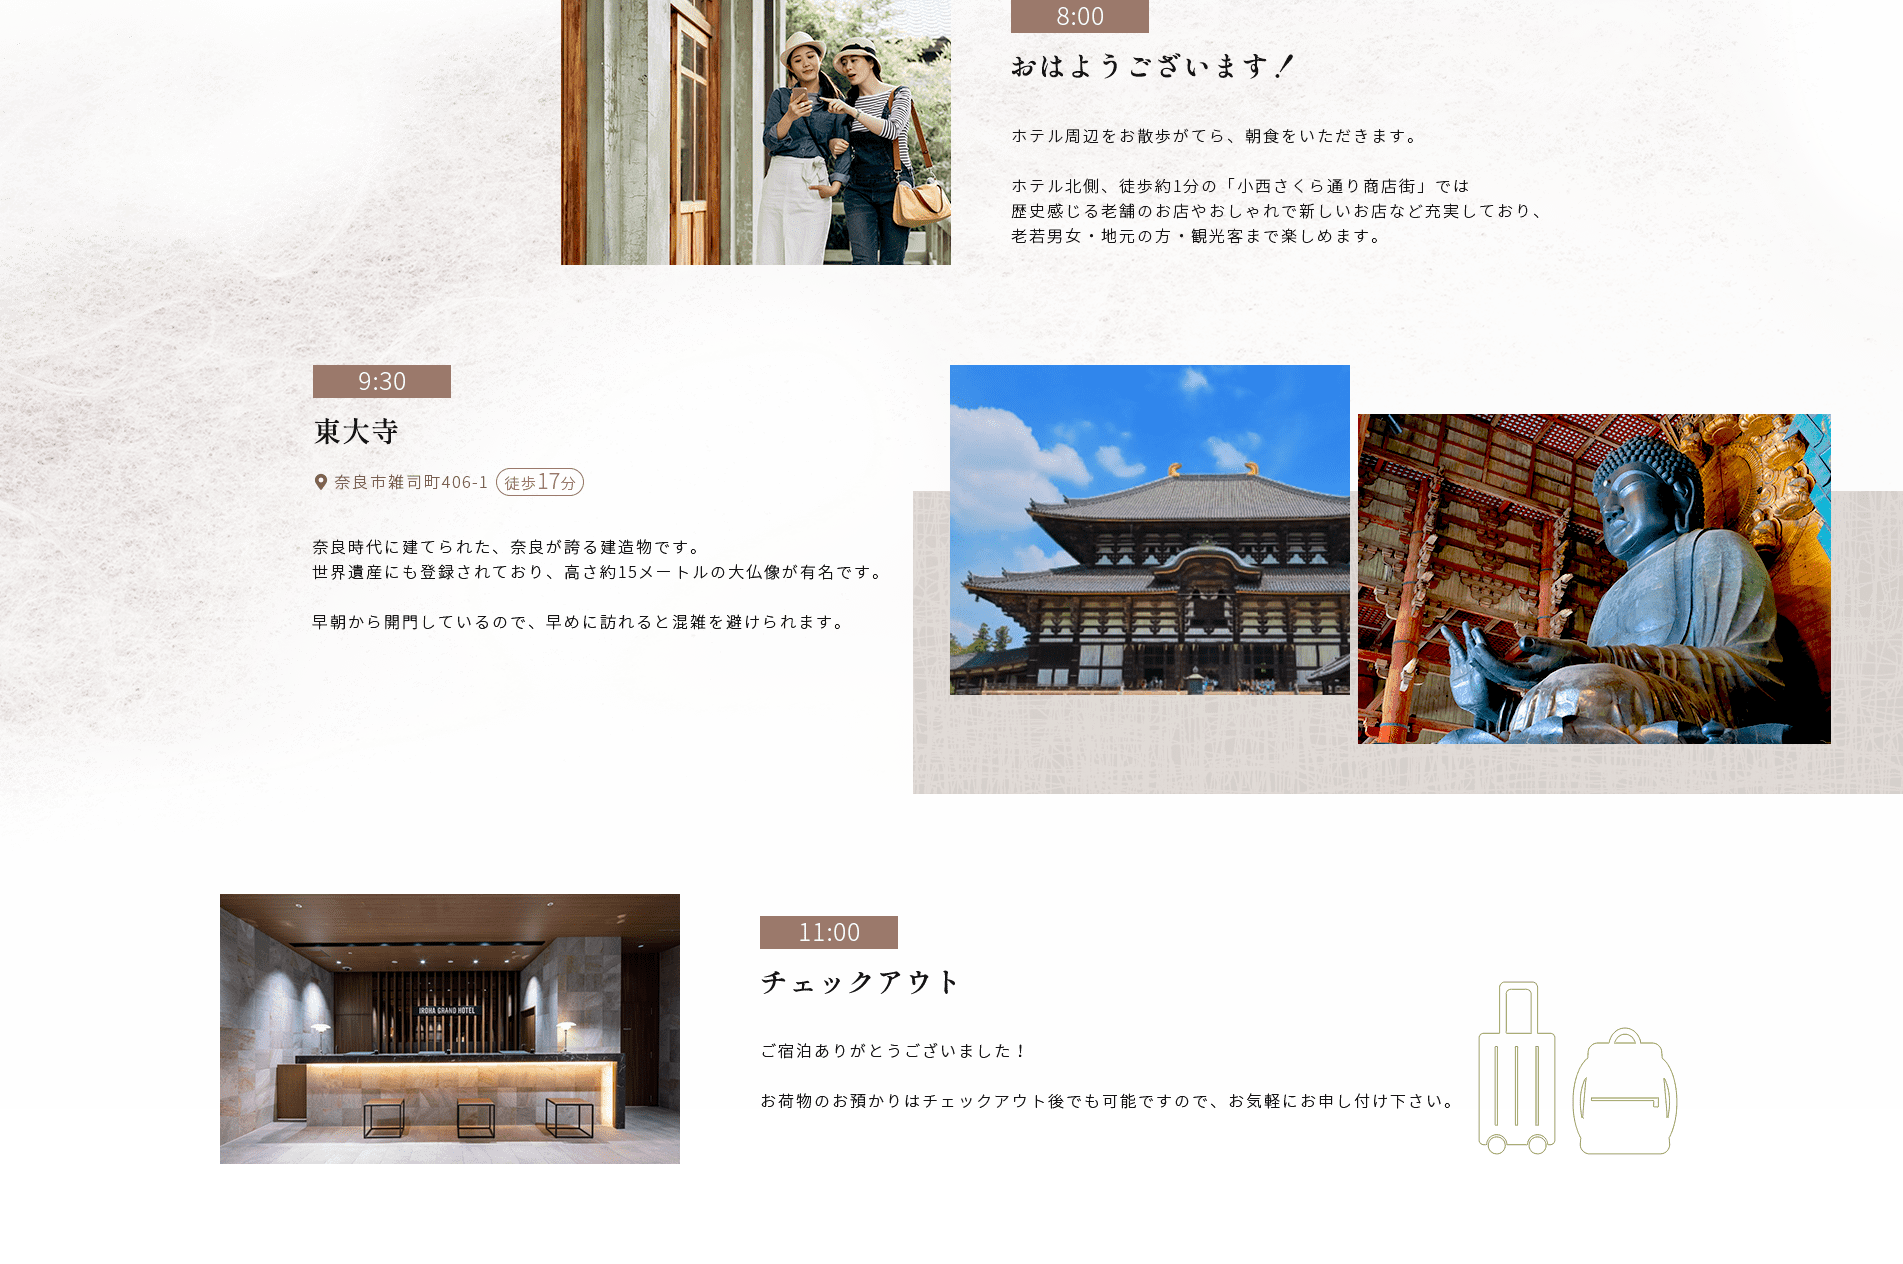 9:30東大寺●奈良市雑司町4061 徒歩17分奈良時代に建てられた、 奈良が誇る建造物です。世界遺産にも登録されており、 高さ約15メートルの大仏像が有名です。早朝から開門しているので、早めに訪れると混雑を避けられます。11:00チェックアウト8:00おはようございます!ホテル周辺をお散歩がてら、 朝食をいただきます。ホテル北側、 徒歩約1分の 「小西さくら通り商店街」では歴史感じる老舗のお店やおしゃれで新しいお店など充実しており、 老若男女・地元の方 観光客まで楽しめます。ご宿泊ありがとうございました!お荷物のお預かりはチェックアウト後でも可能ですので、お気軽にお申し付け下さい。